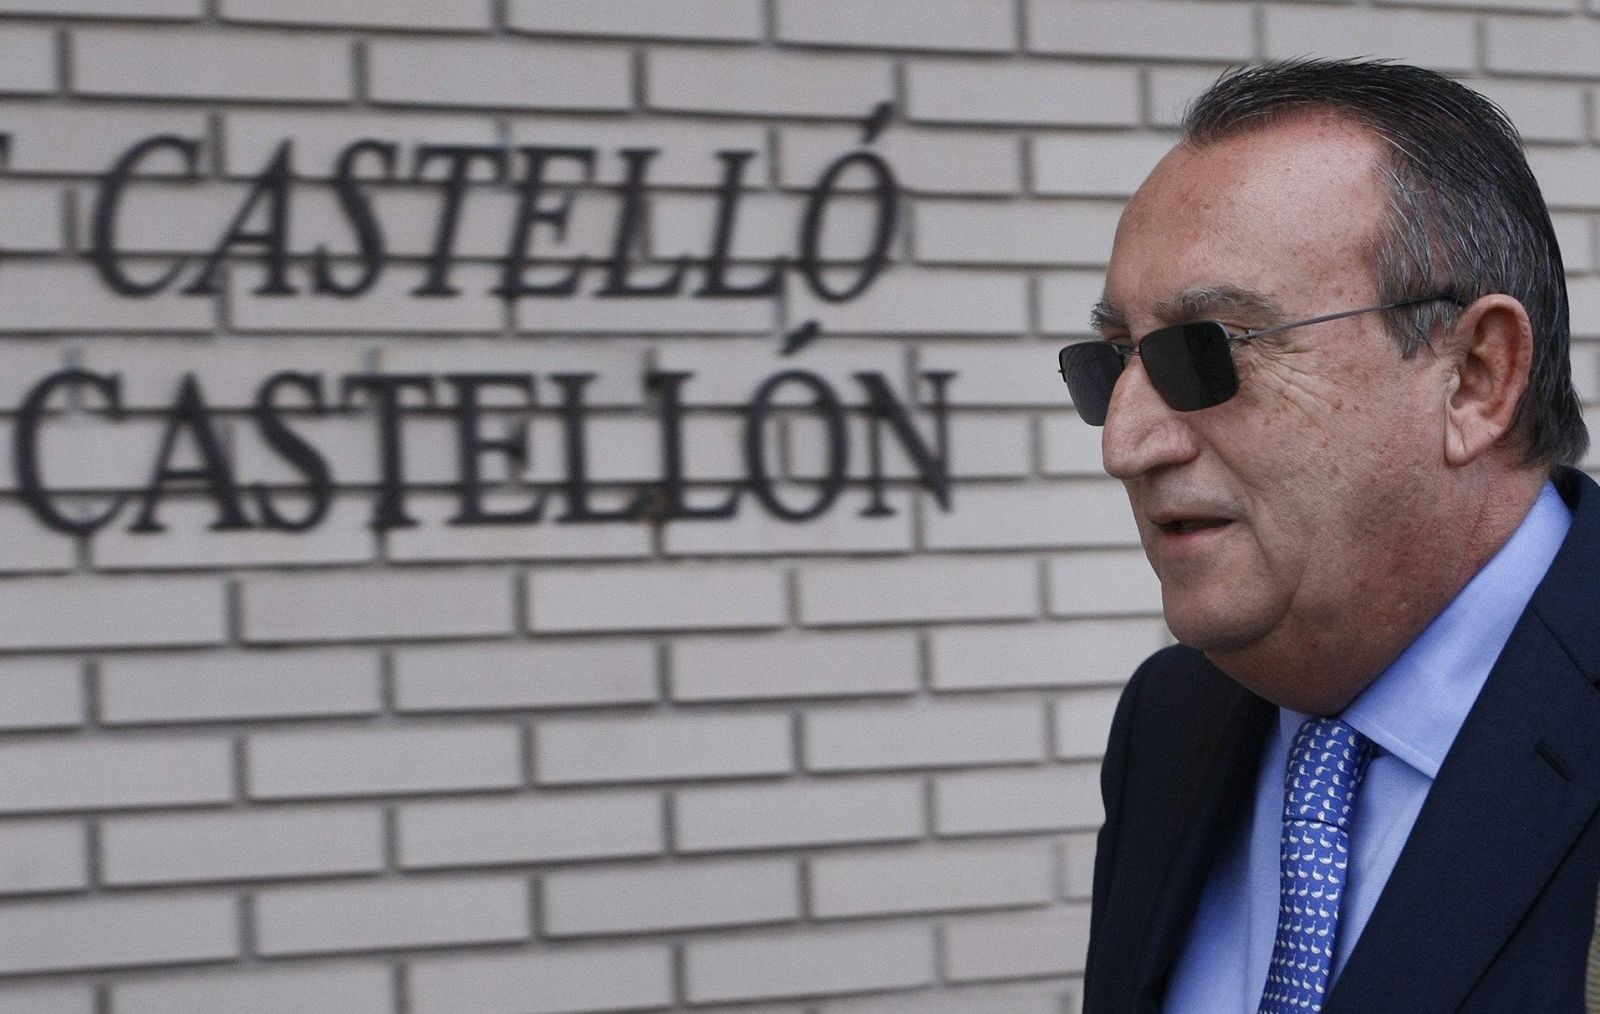 El expresidente de Castellón, Carlos Fabra, es juzgado por tráfico de influencias, cohecho y delitos contra la Hacienda Pública.